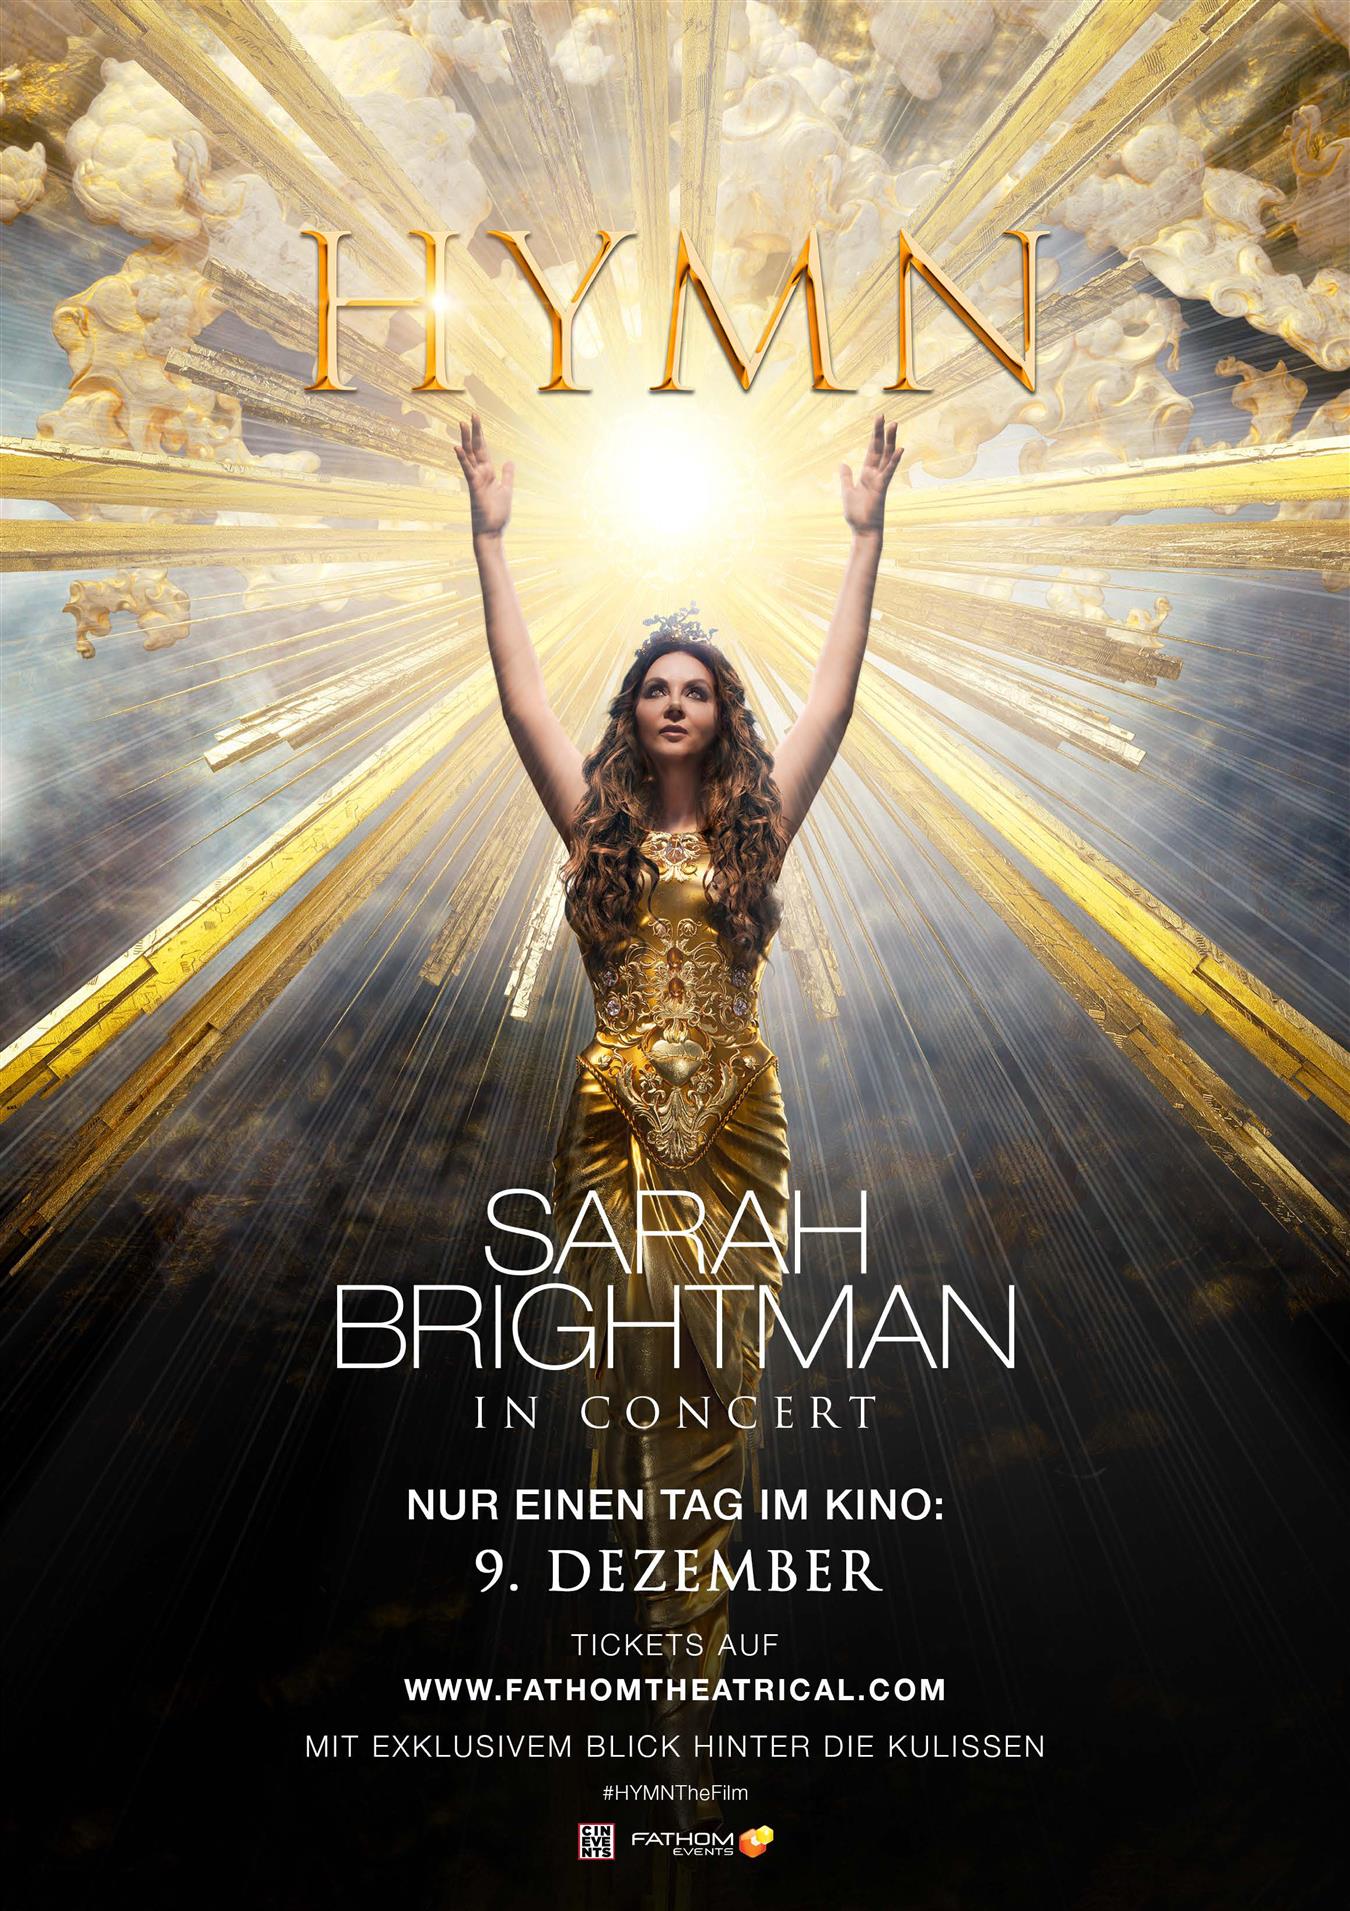 HYMN - Sarah Brightman in Concert